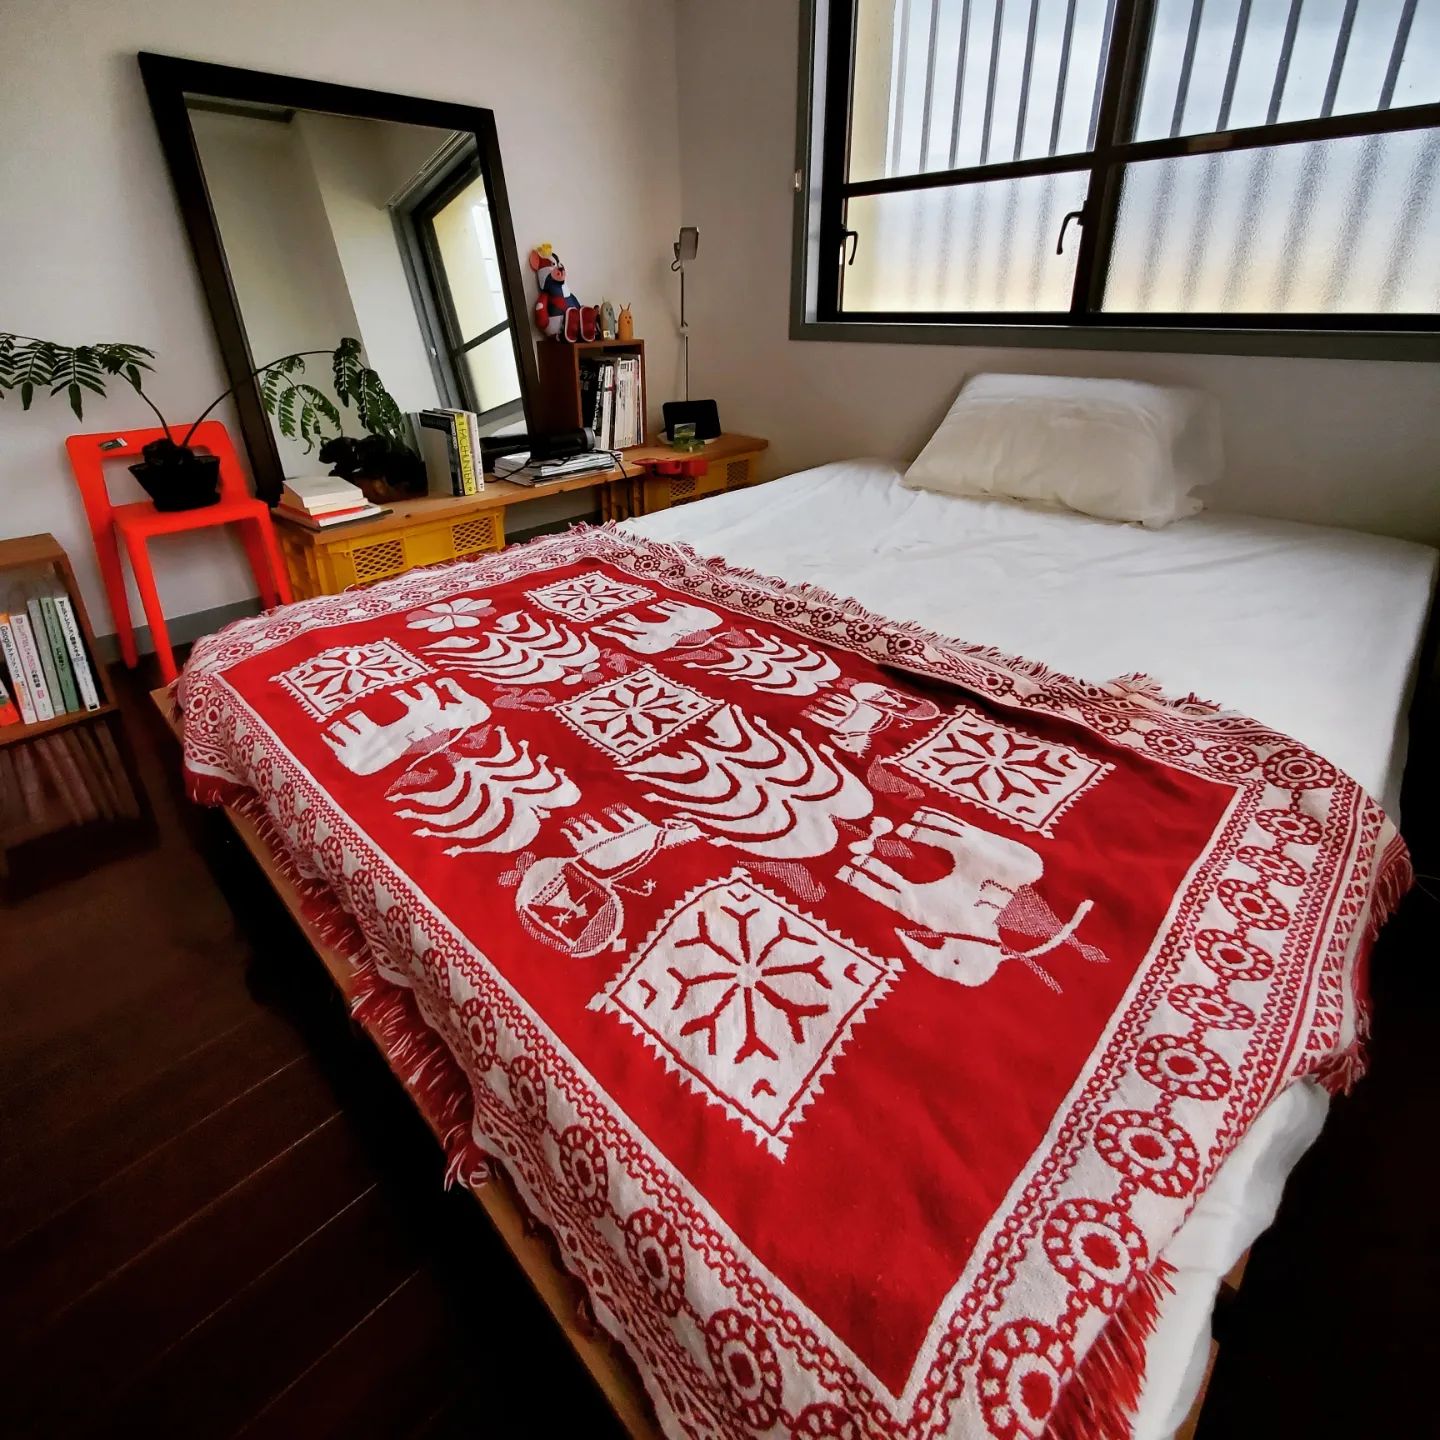 こちらは寝室。あえて赤など鮮やかな差し色を加えることで、自分らしい空間に。